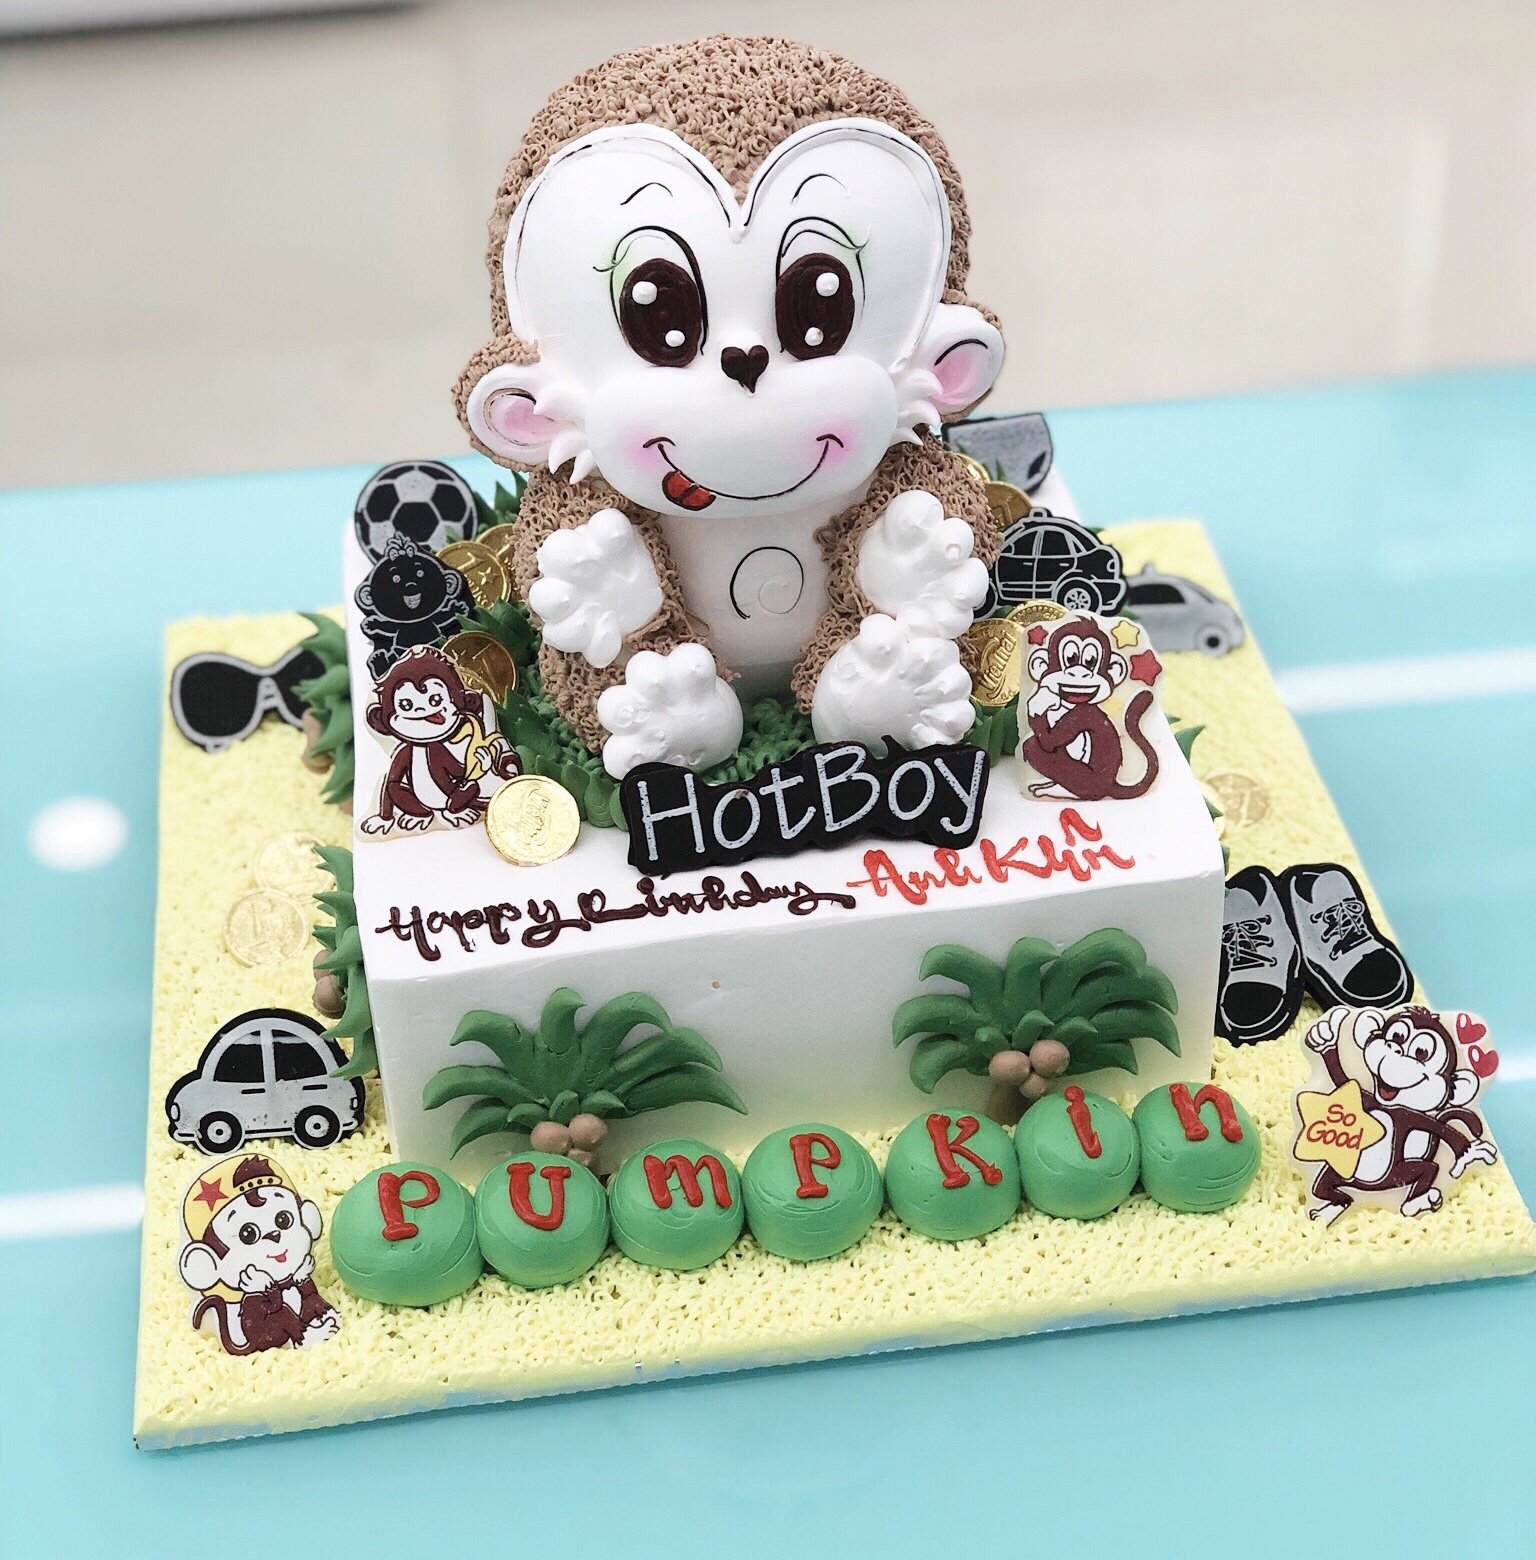 Bánh sinh nhật con khỉ sẽ khiến mọi người đều thích thú vì sự độc đáo và dễ thương của nó. Hãy đón xem những hình ảnh về loại bánh này và cùng nhau ngắm hoa hồng phủ đầy trên trái tim con khỉ vì đây thực sự là sự lựa chọn tuyệt vời cho bữa tiệc sinh nhật.